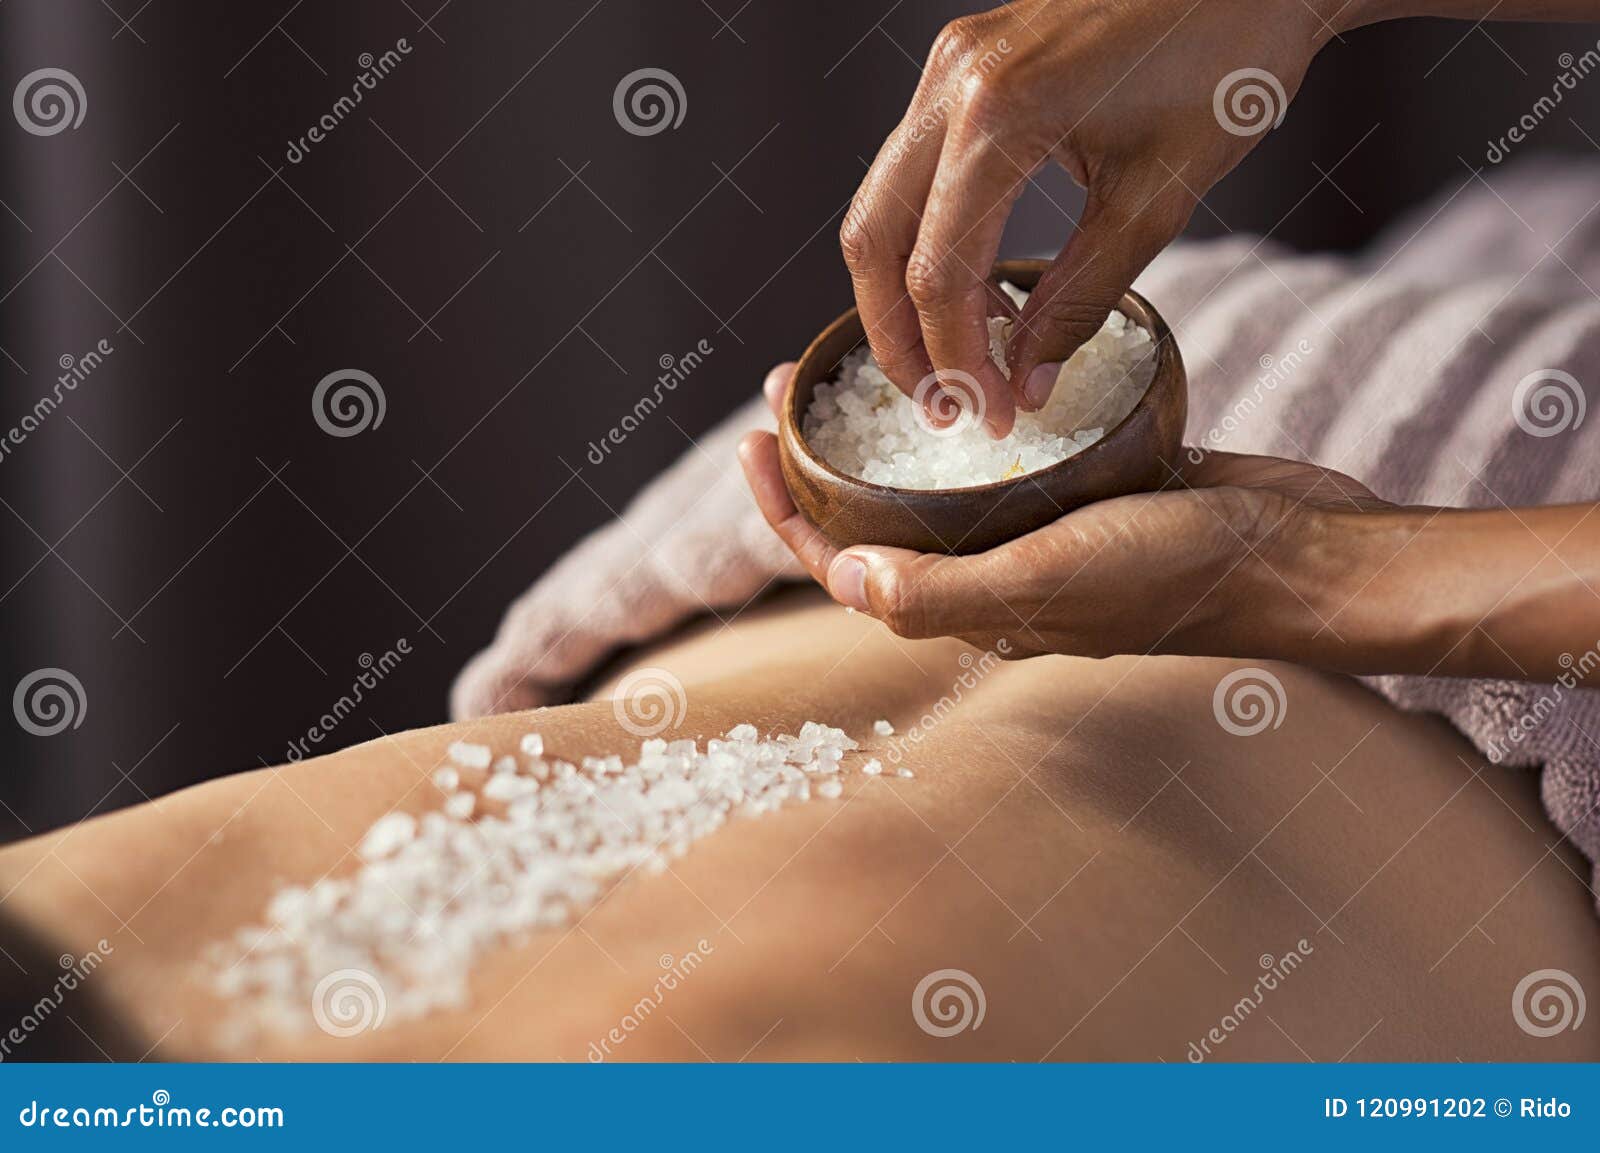 body scrub with salt at spa